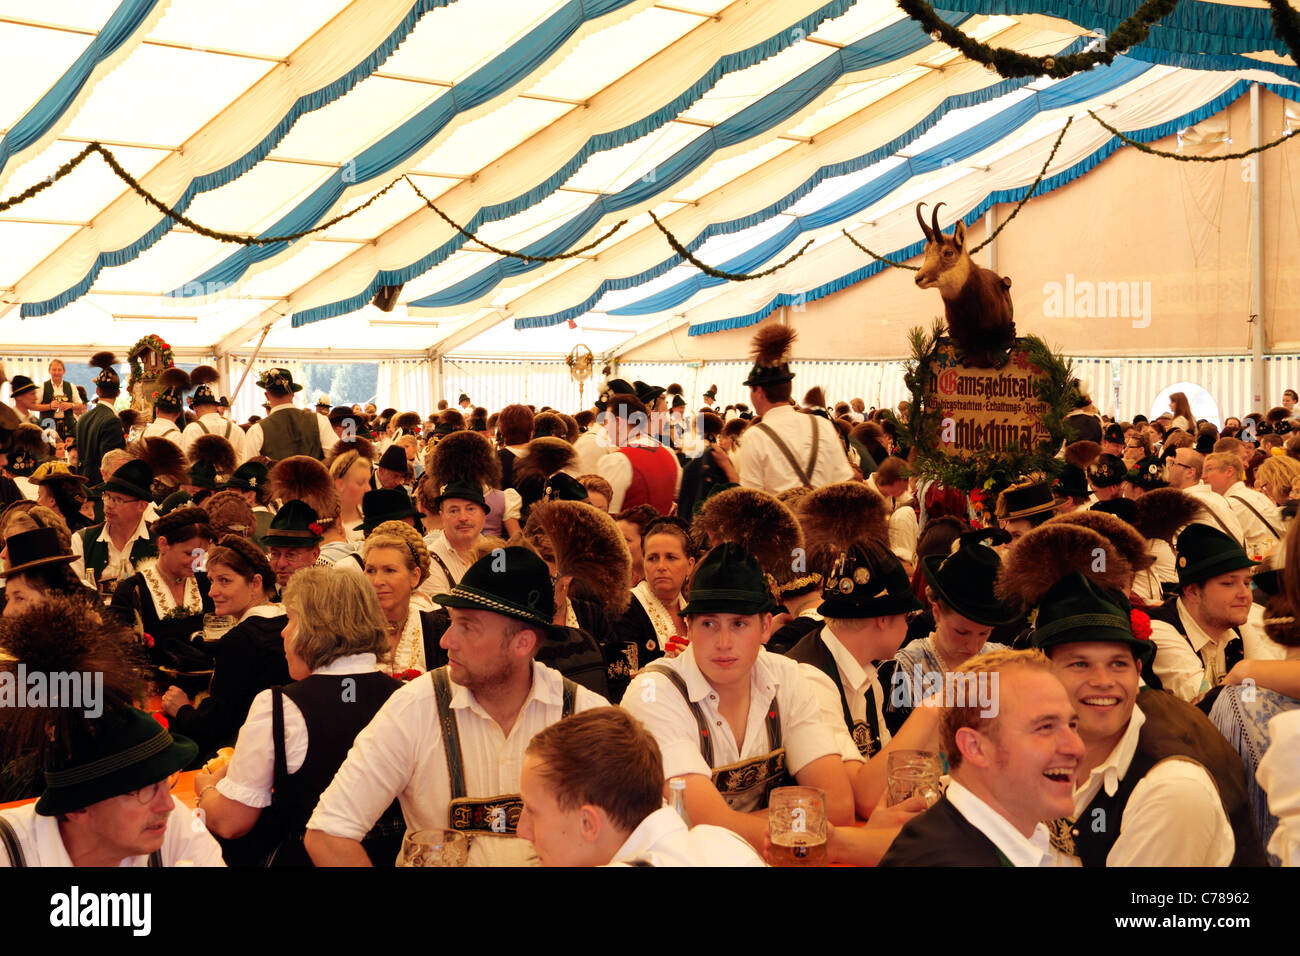 All'interno di una tenda della birra le celebrazioni nella ( Gaufest ) Festival del tradizionale costume bavarese Baviera Germania Foto Stock